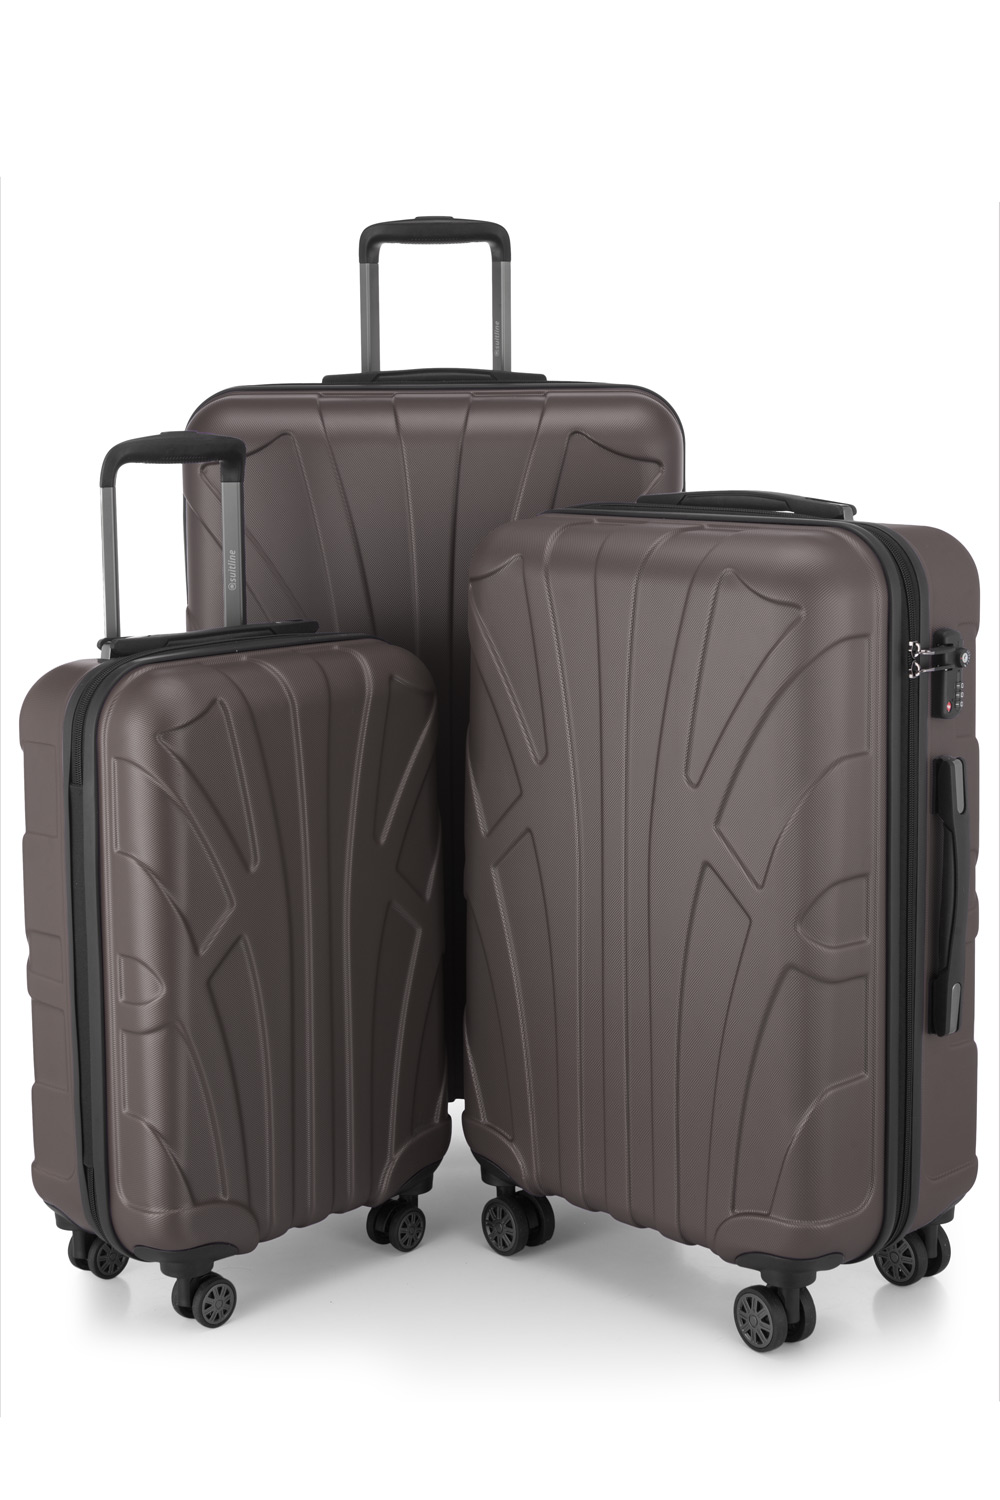 Kofferset 3 teilig, Hartschale ABS, Koffergrößen S/M/L, TSA-Zahlenschloss -  Titan